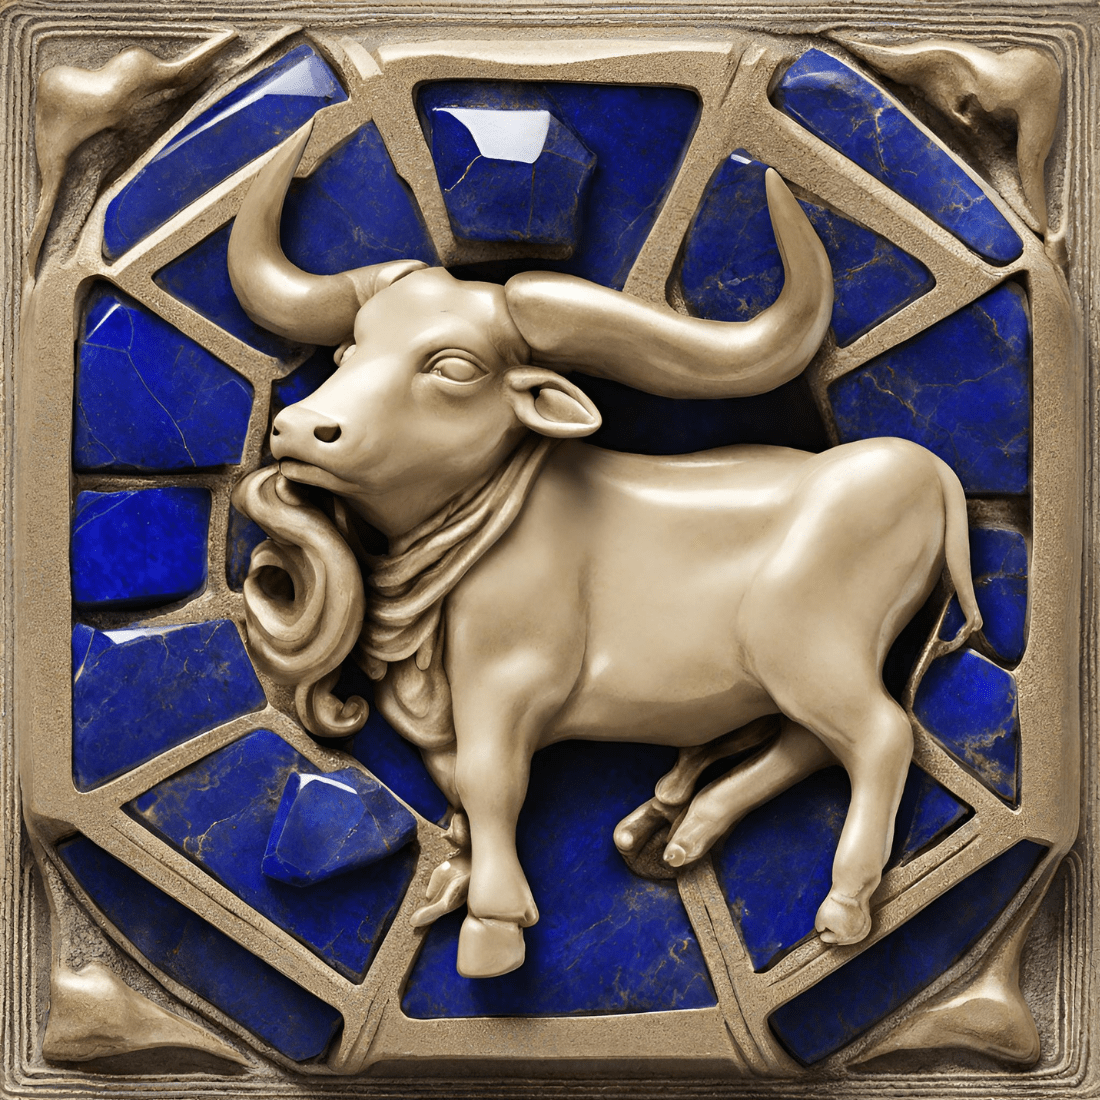 Risveglio Spirituale per il Toro Questa Primavera: Una Guida all'Uso del Lapislazzuli